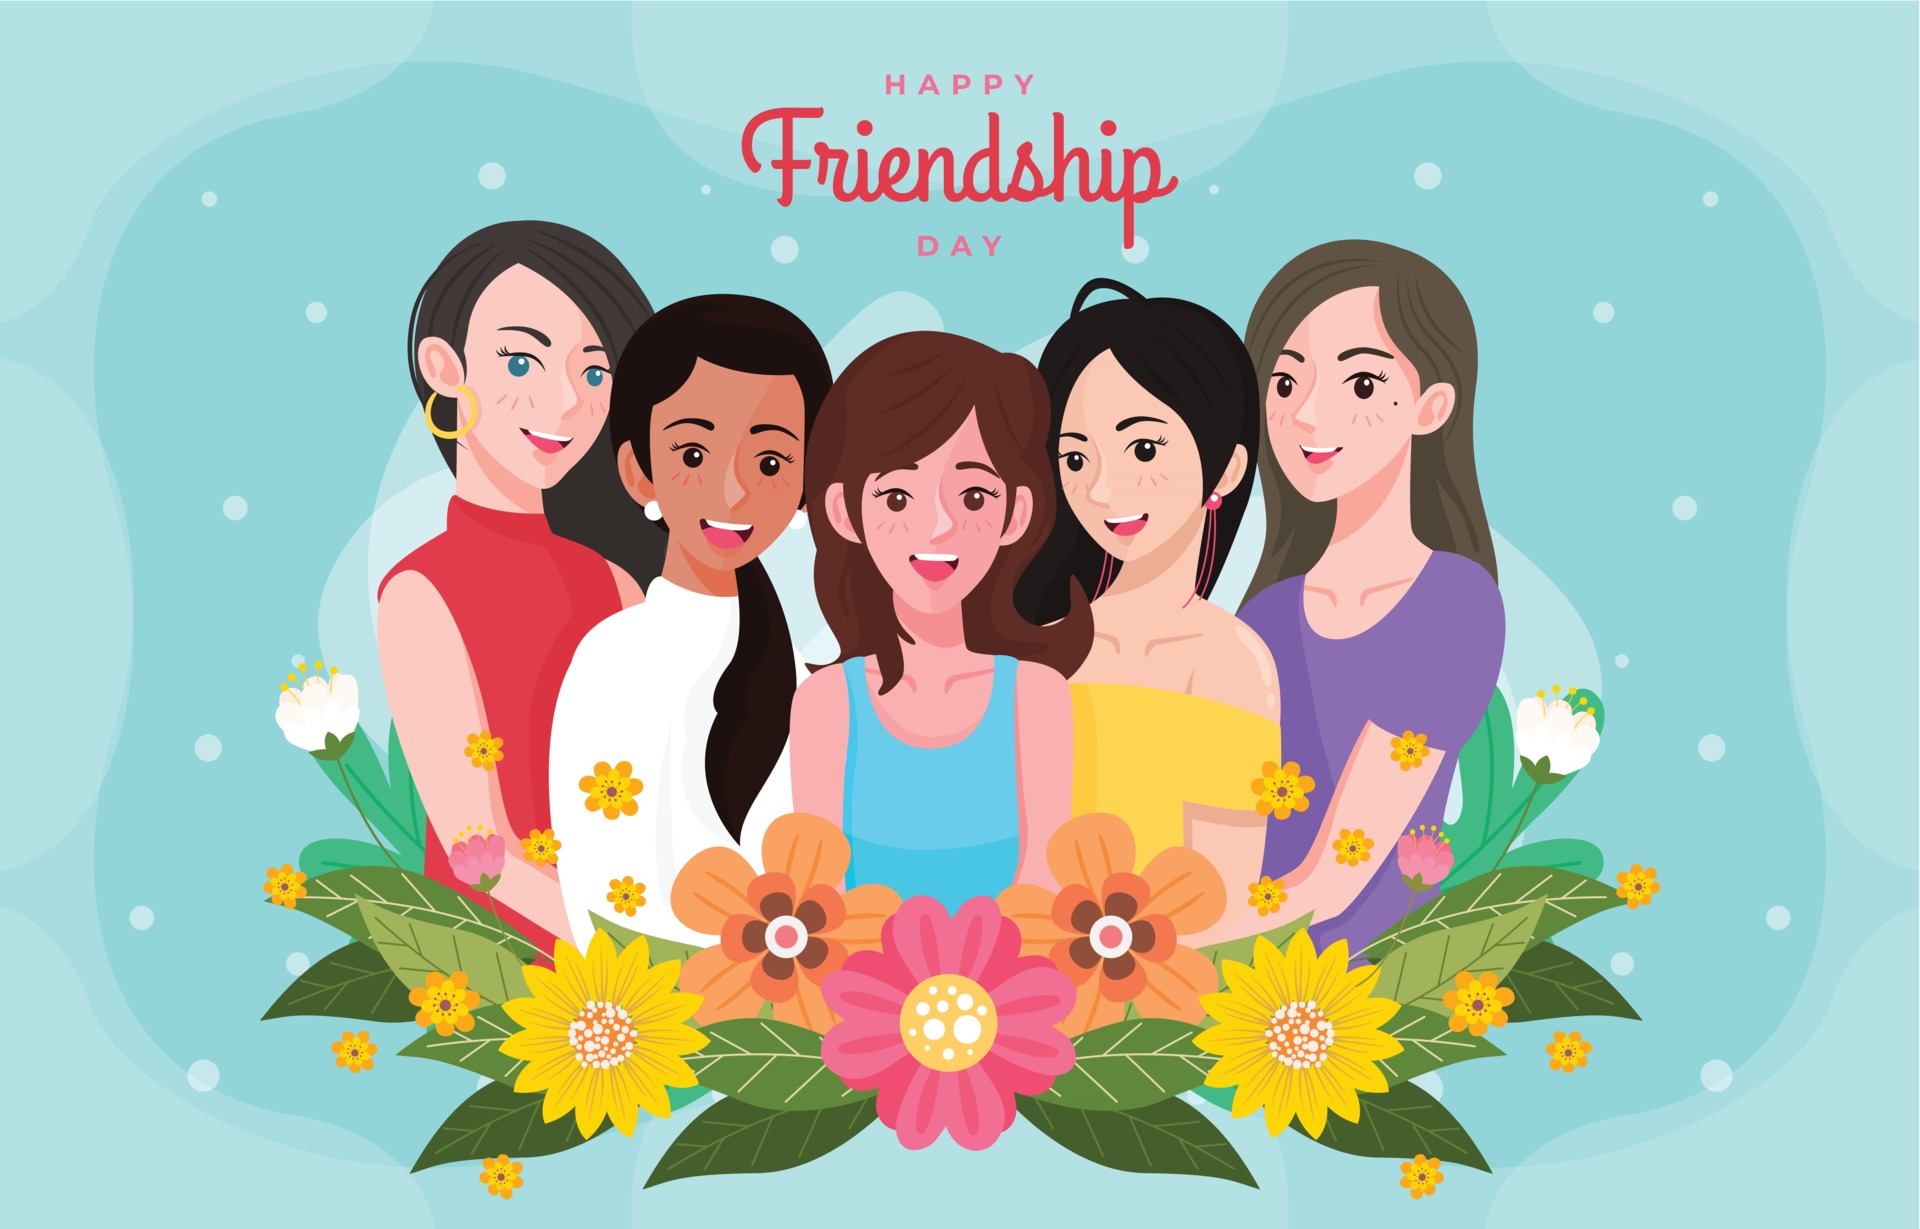 five friends images